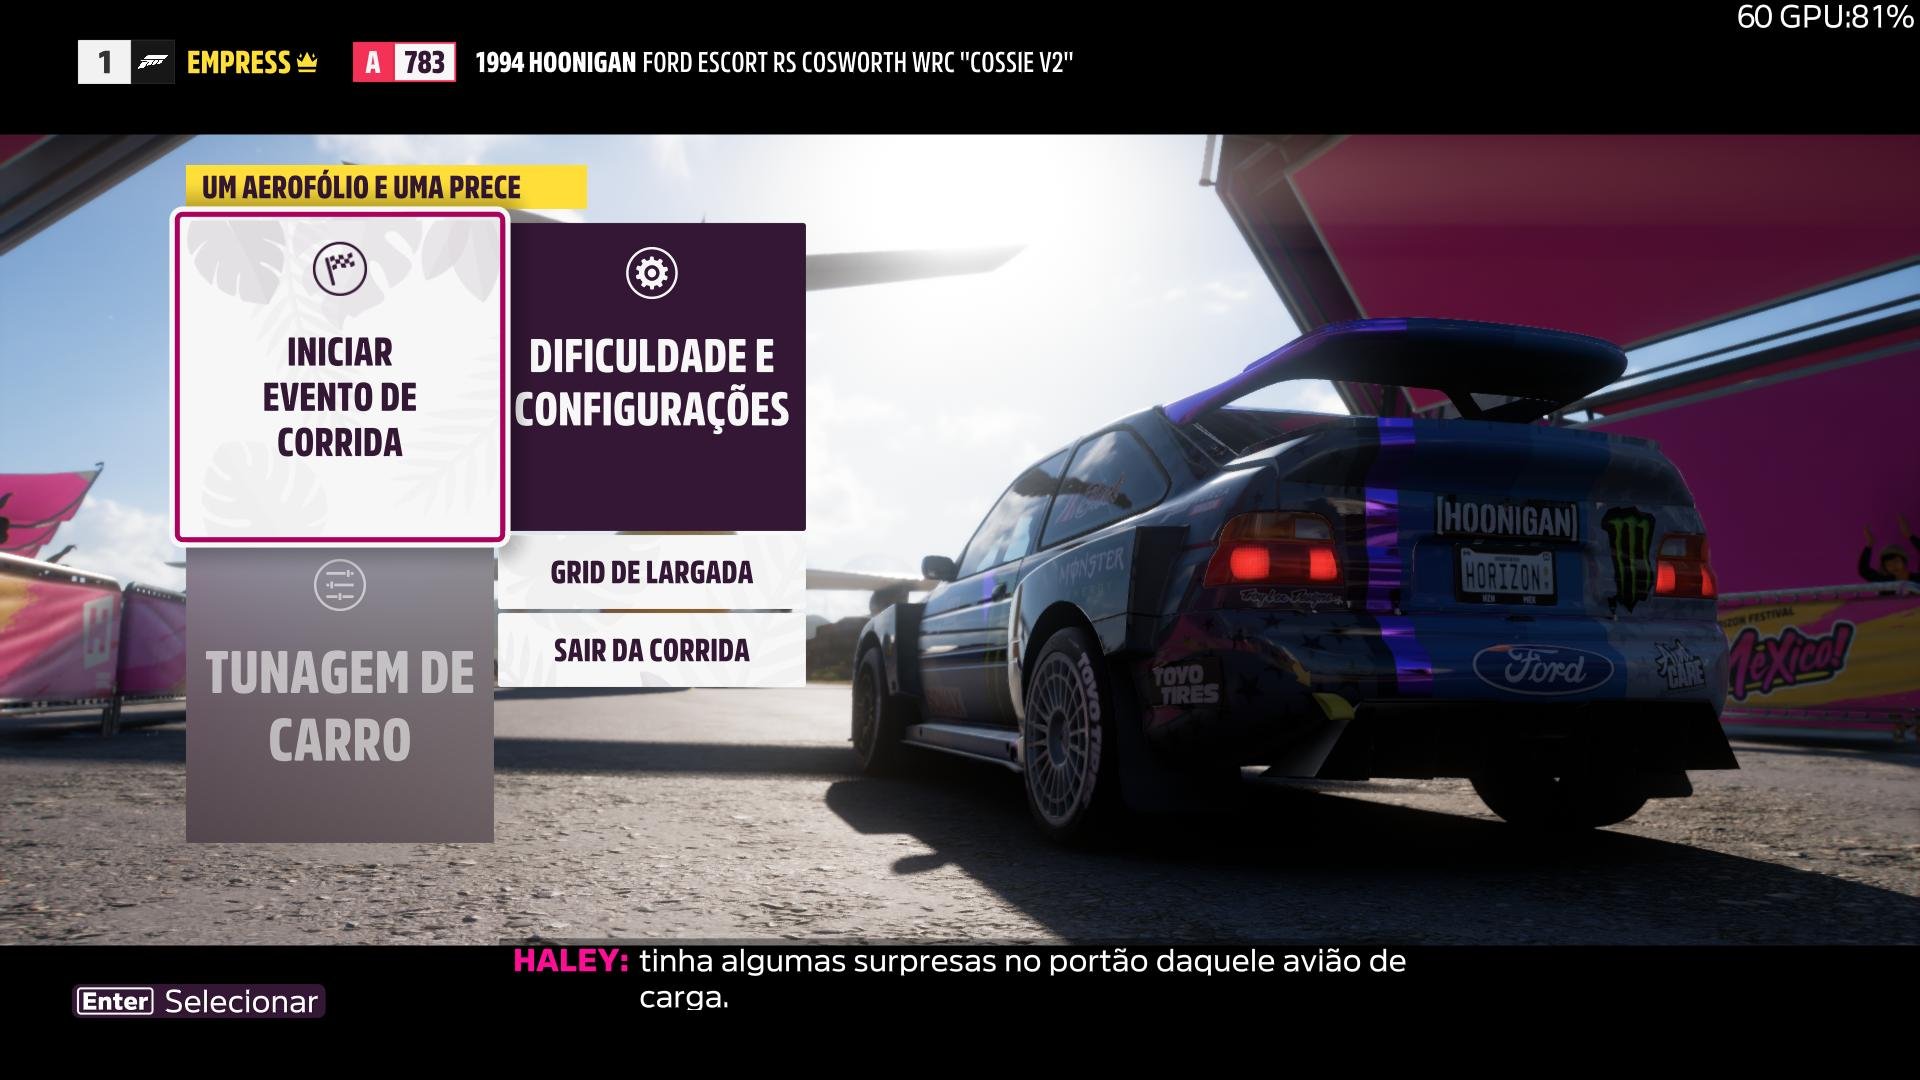 Descrição da imagem: Apresenta um exemplo das legendas do jogo, e um carro visto por traz.